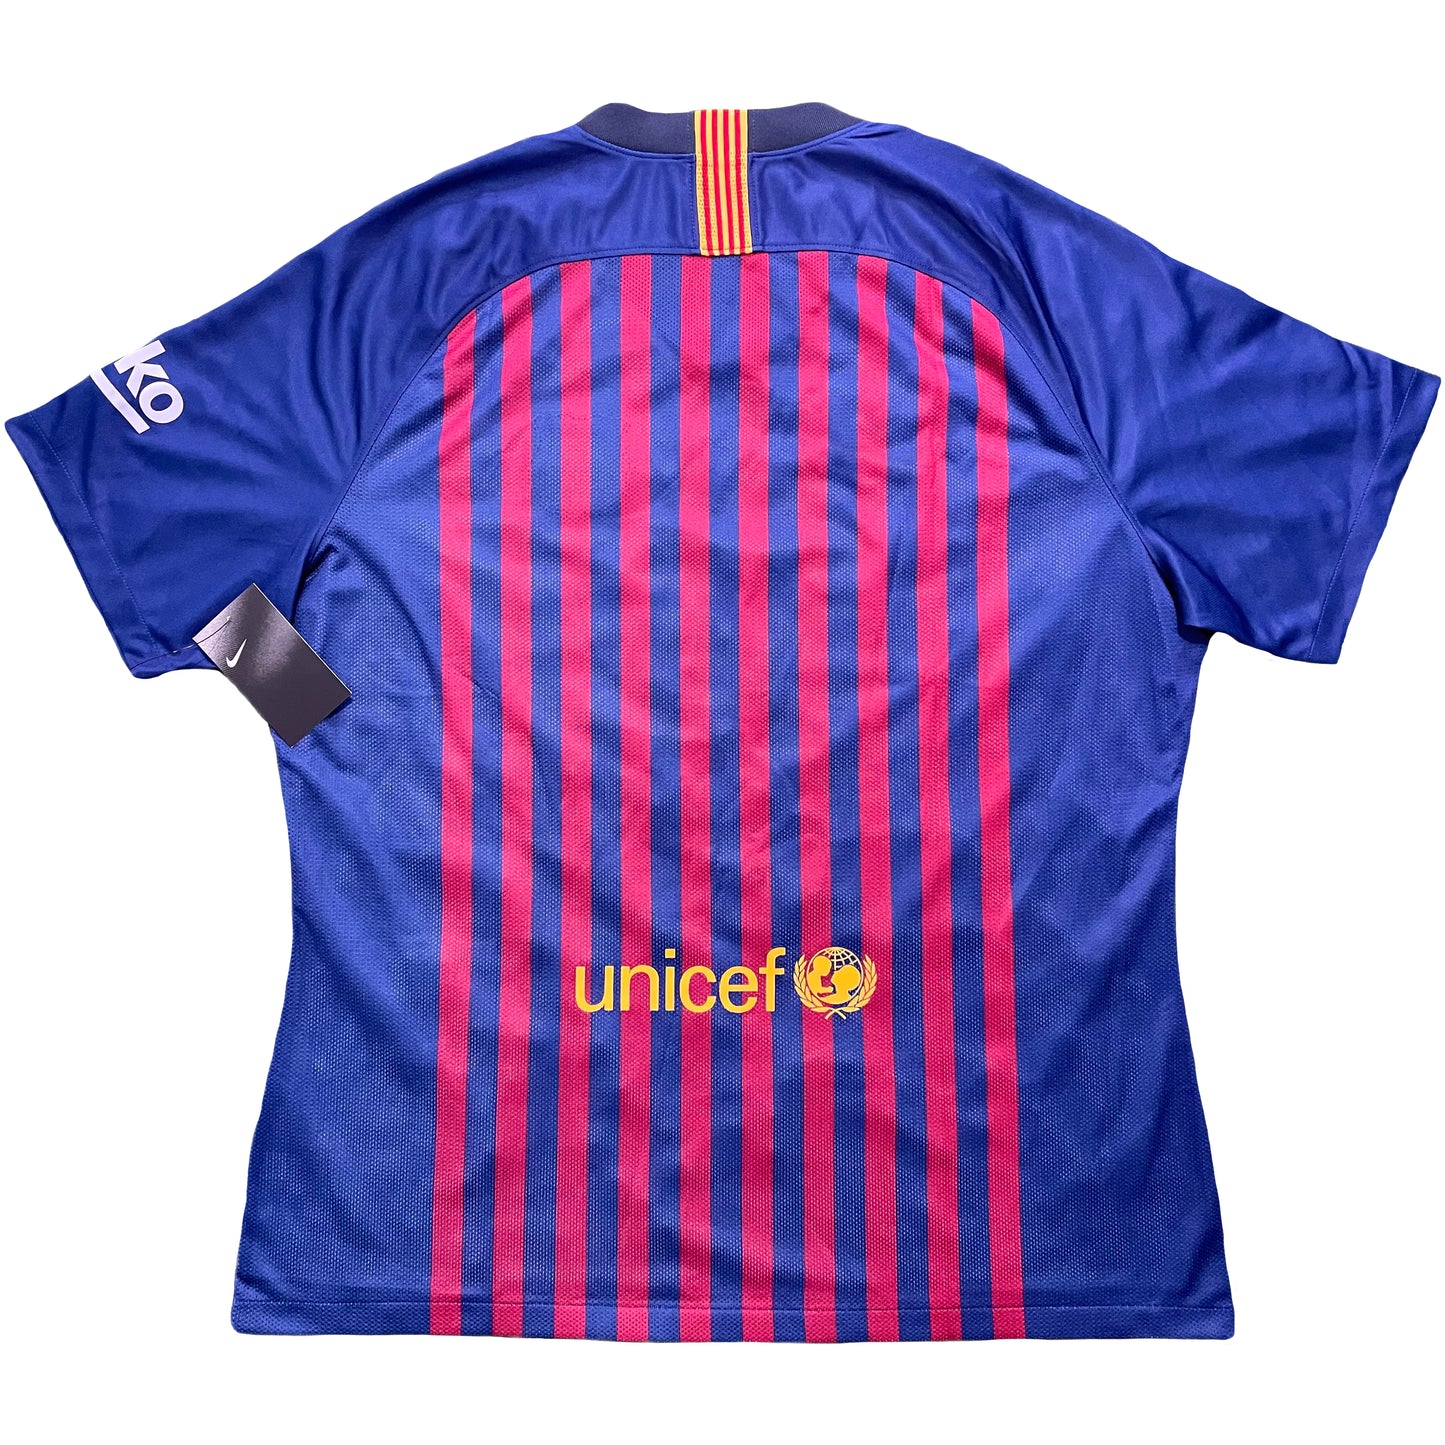 <tc>2018-2019 FC Barcelona camiseta local player issue de categor&iacute;as inferiores (XXL)</tc>